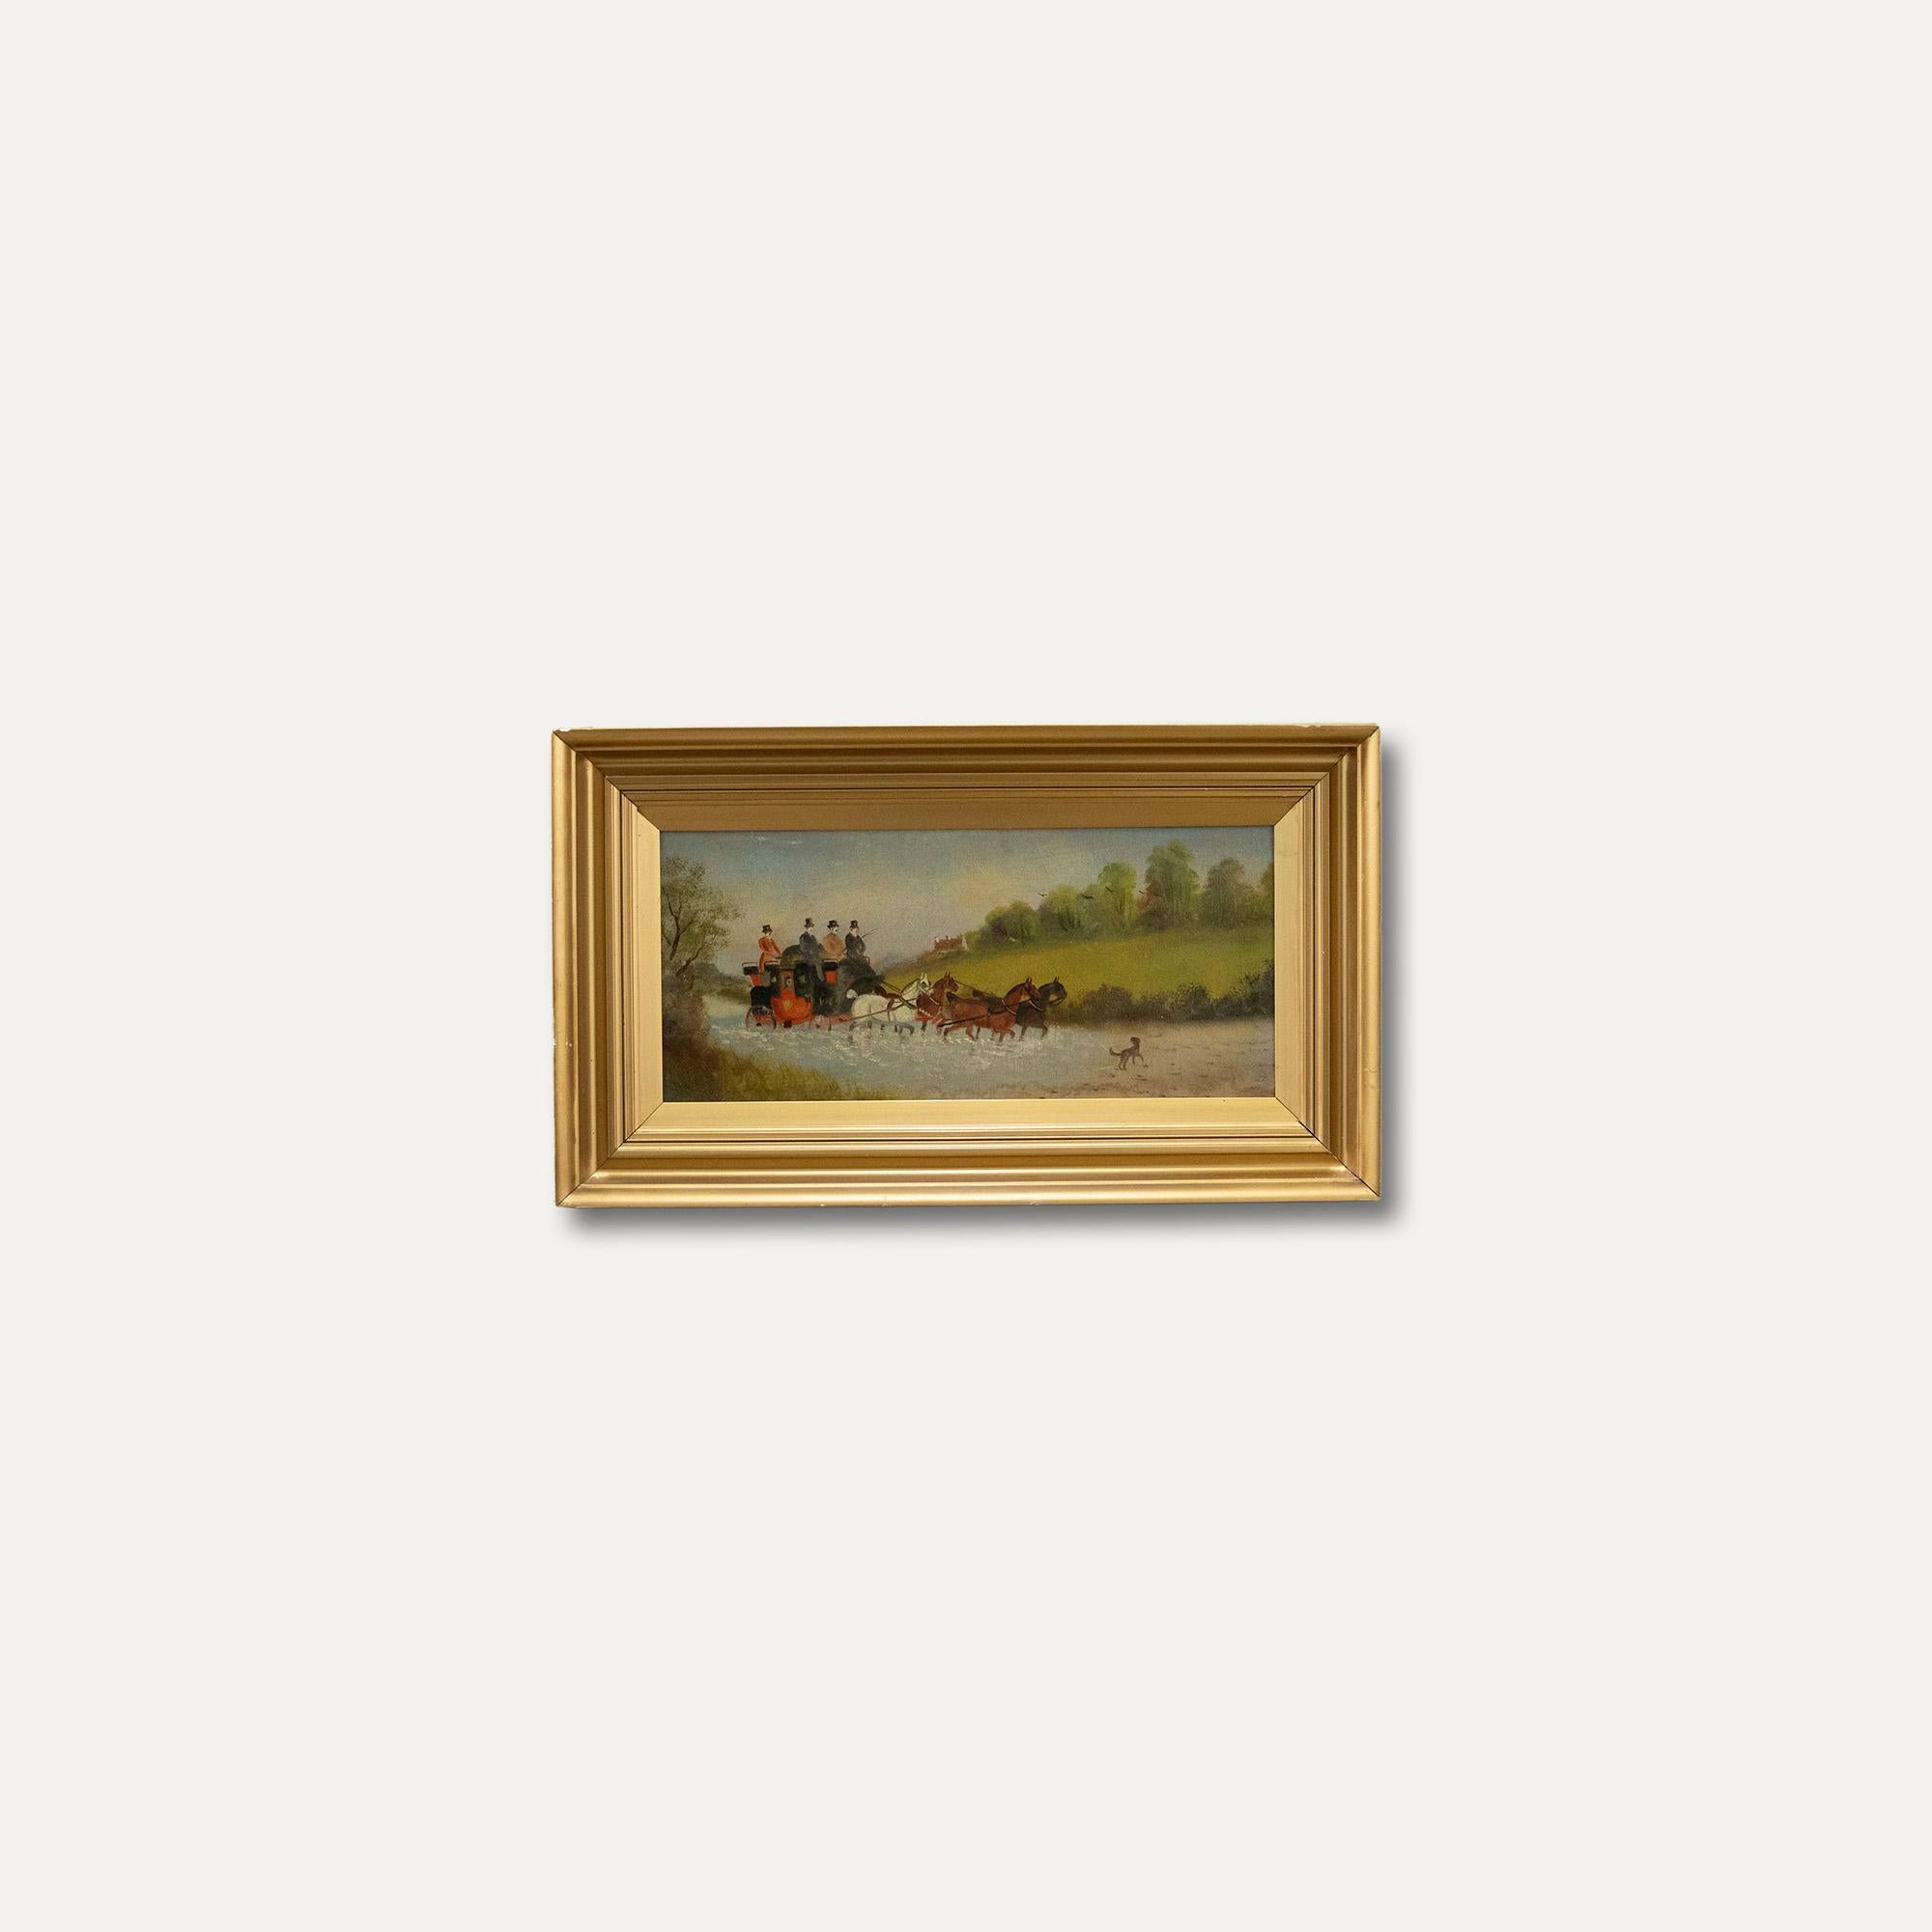 Une huile du début du 20e siècle de l'artiste anglais bien connu Philip Henry Rideout (1860-1920). La scène représente une diligence se déplaçant facilement dans une grande flaque d'eau. Présenté dans un cadre à effet doré du 20e siècle.